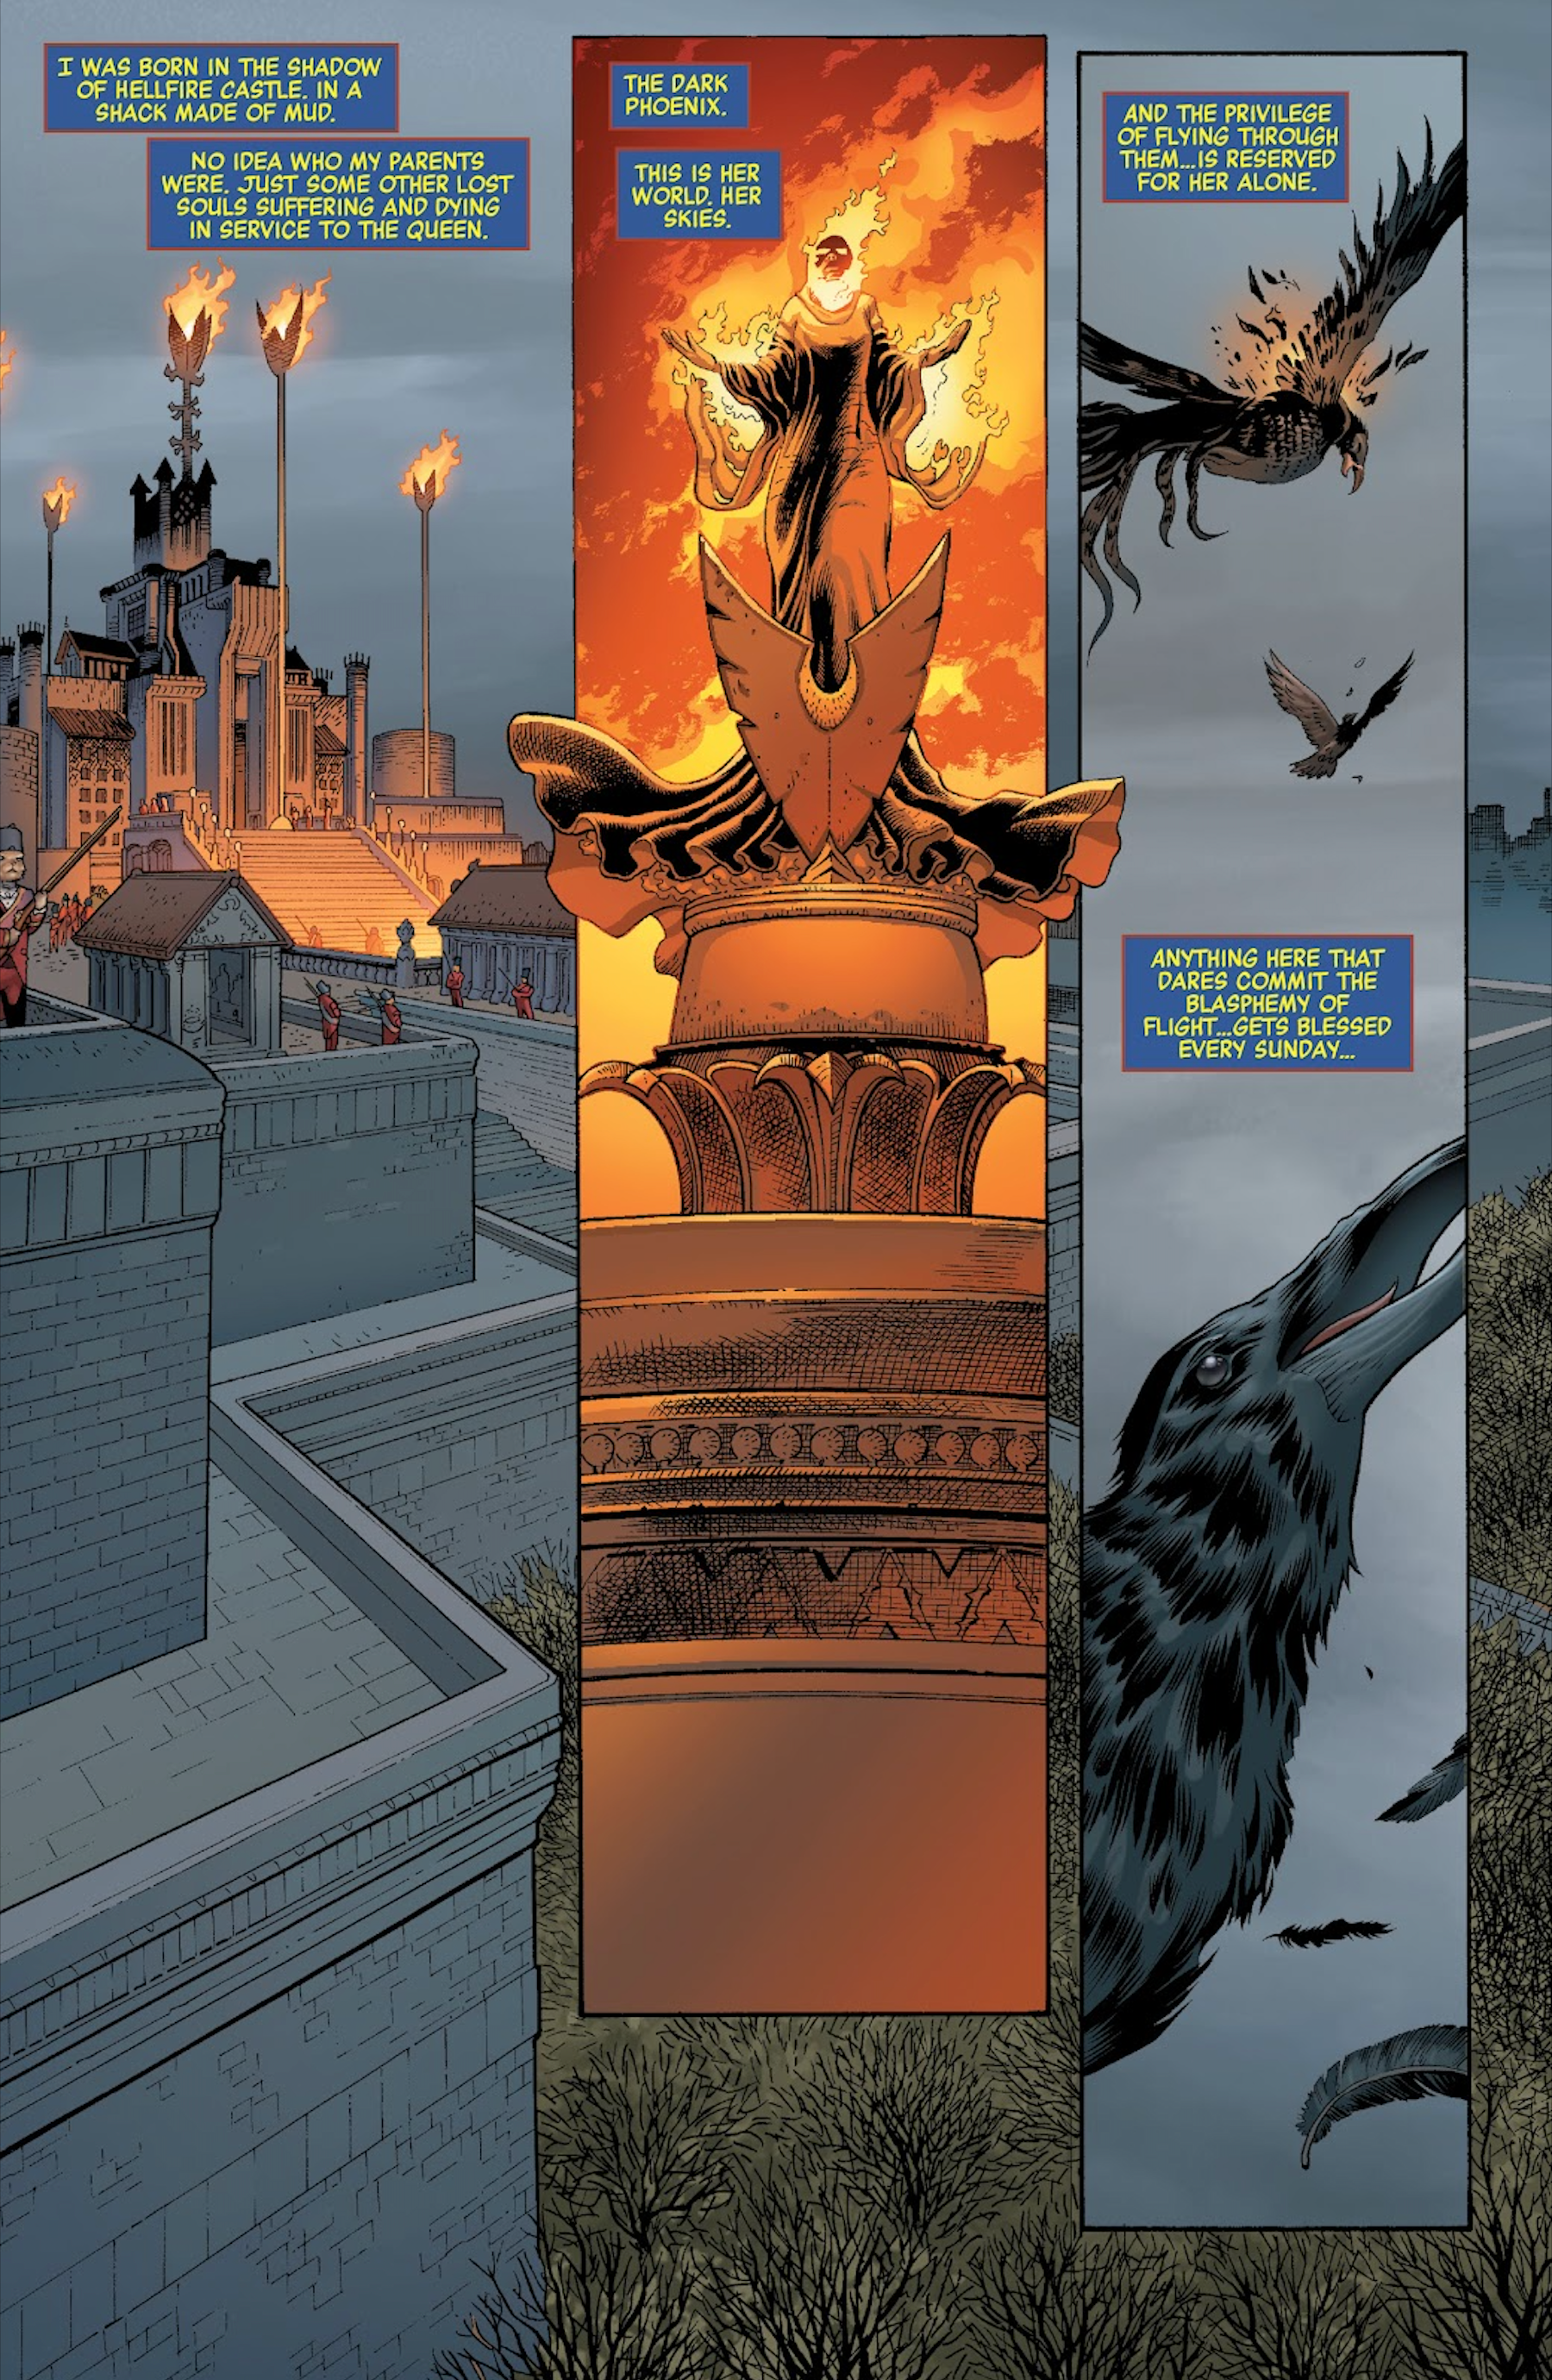 X-Men’s Dark Phoenix Returns As A God For Villains